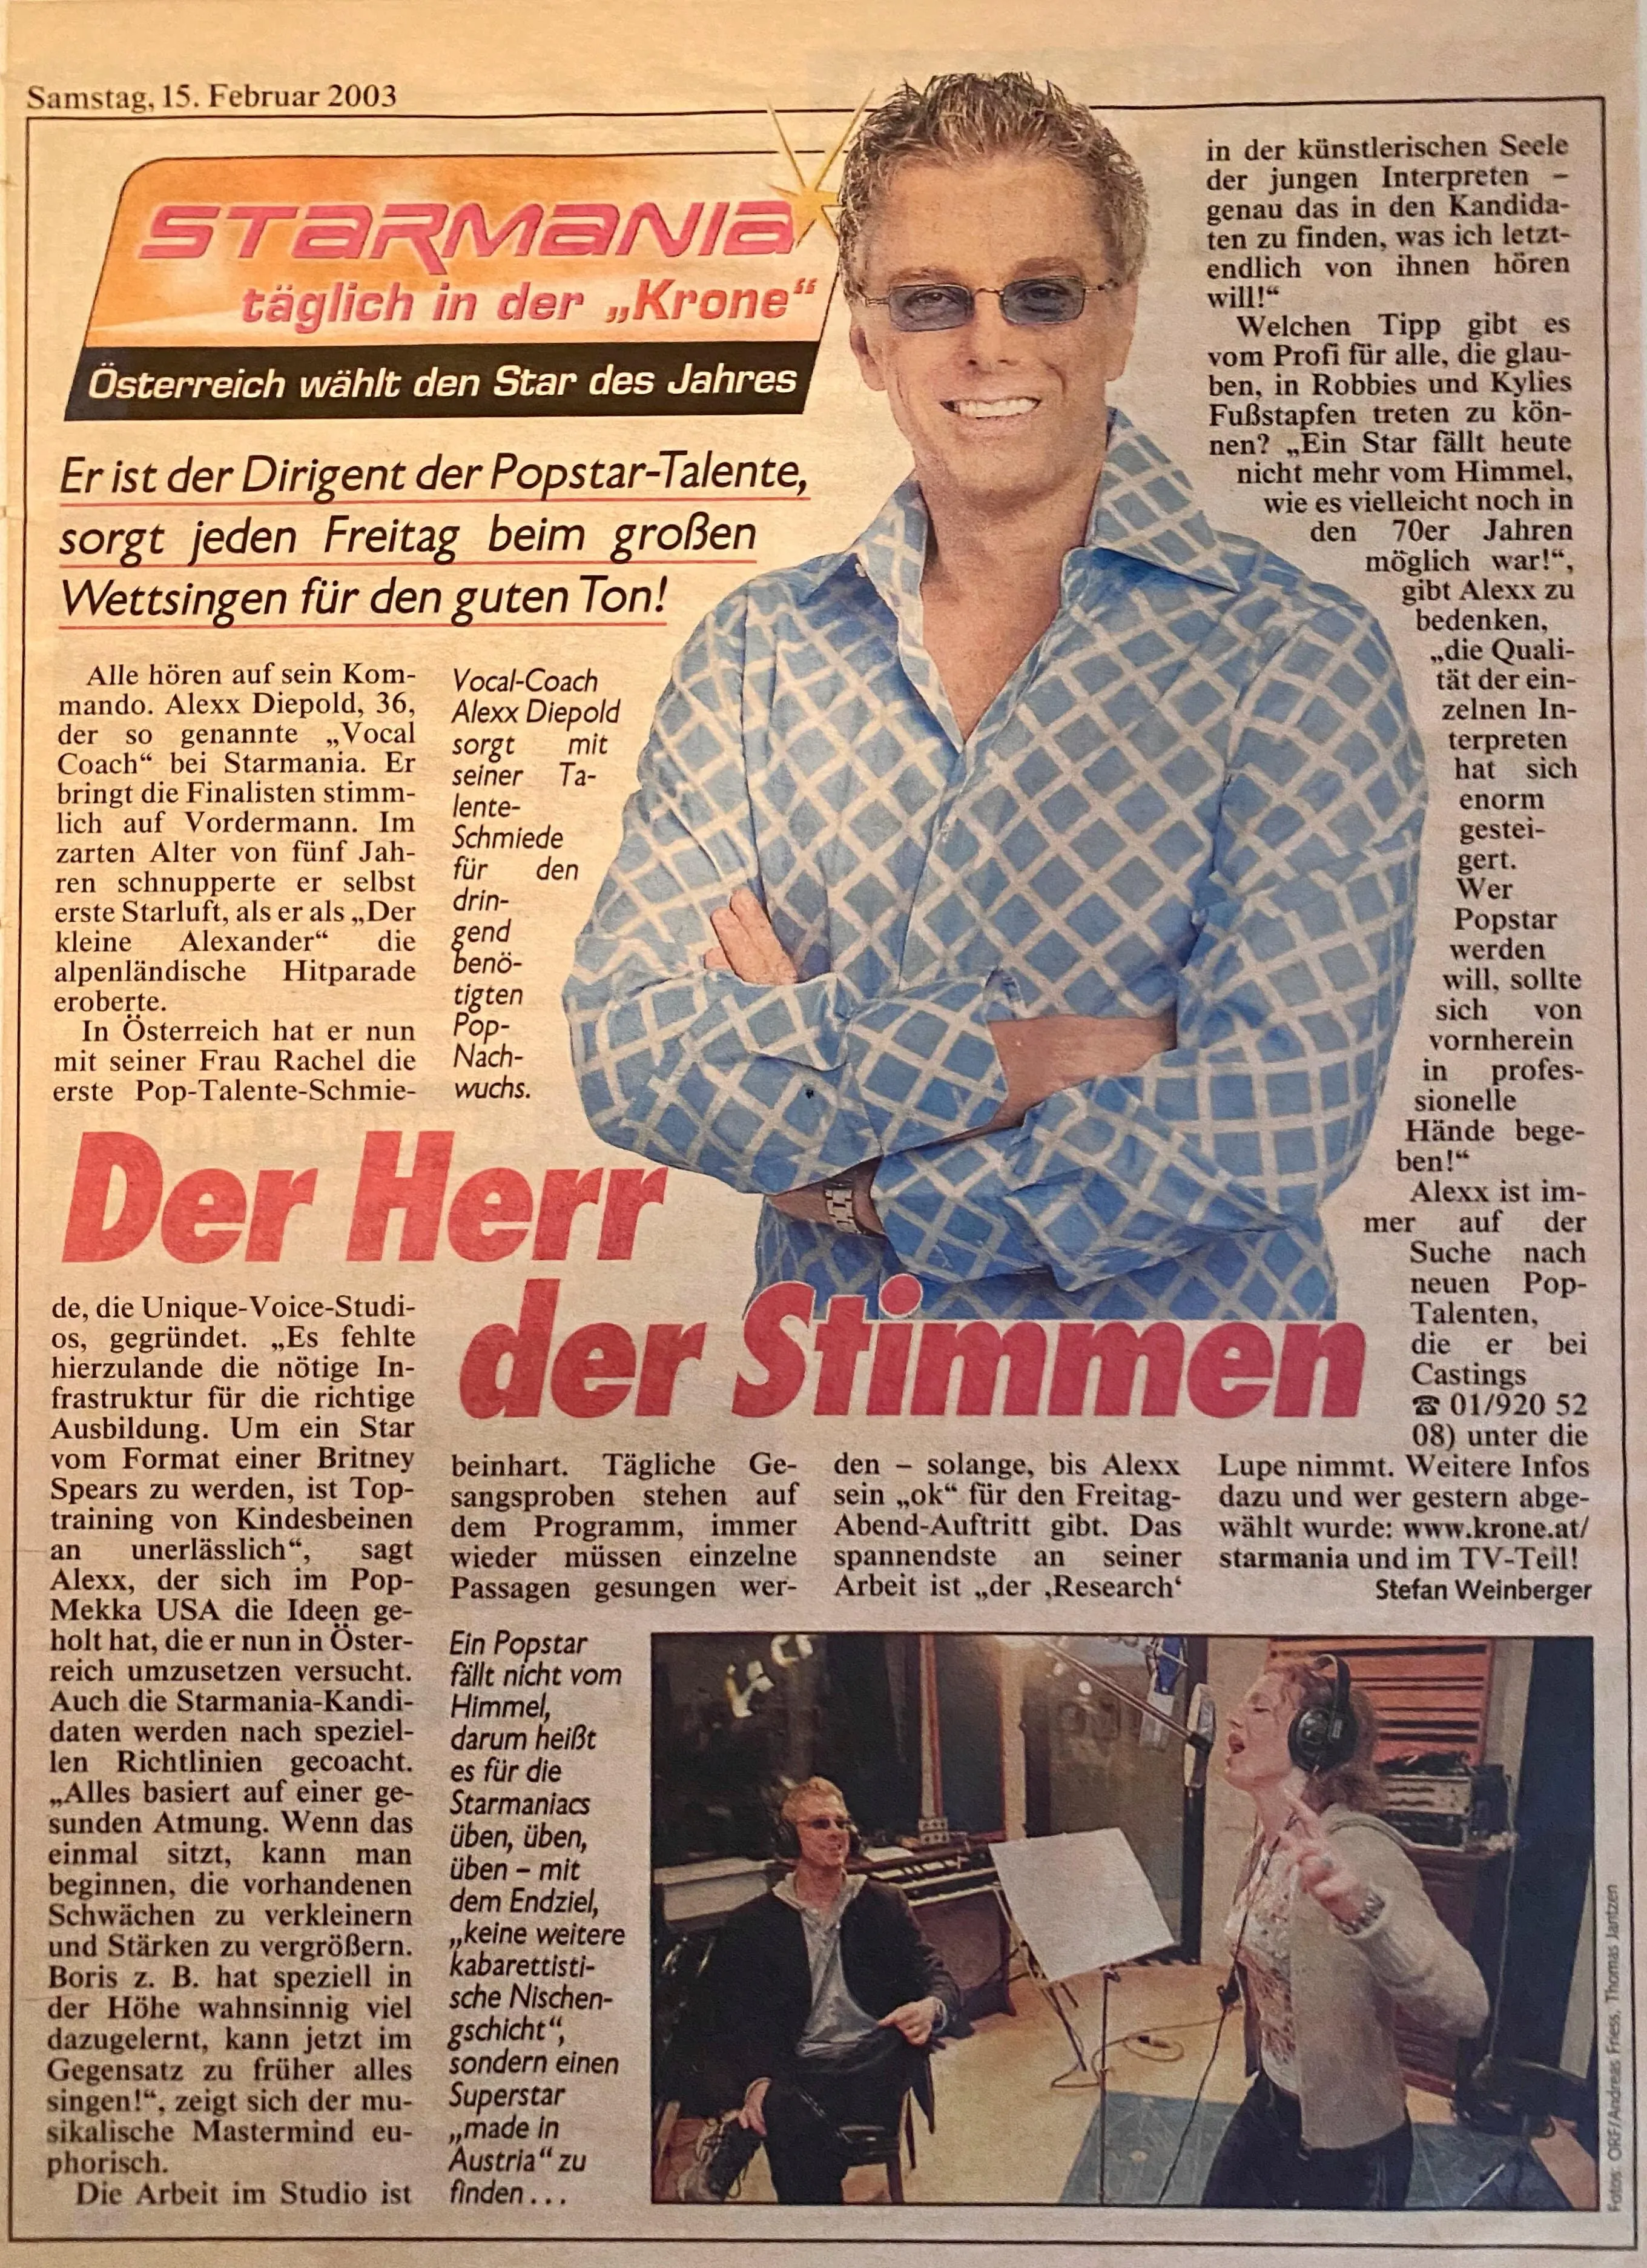 Alexander Diepold Vocal Coach bei Starmania - Artikel aus der Kronen Zeitung